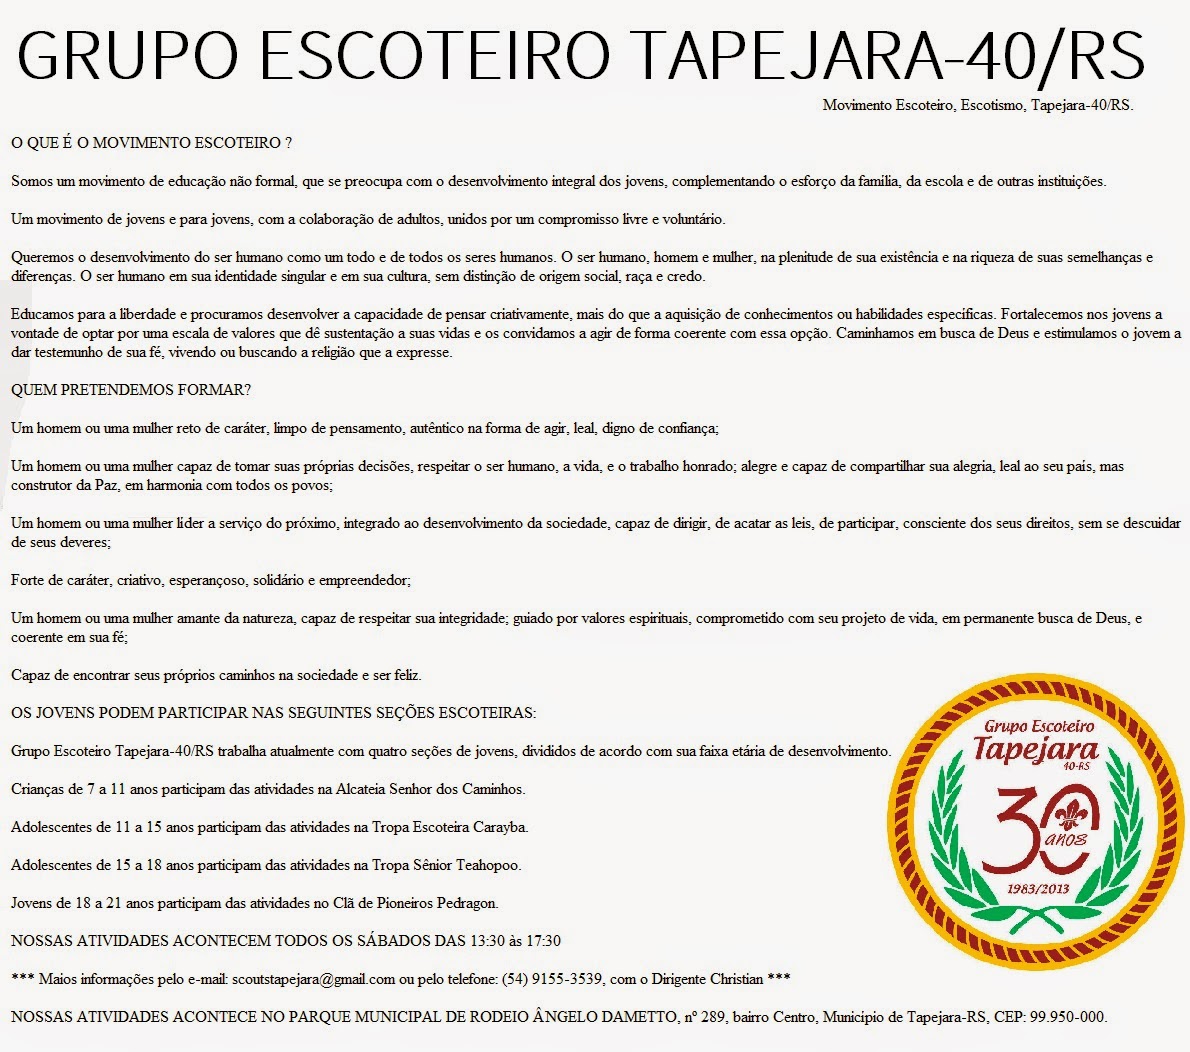 GRUPO DE ESCOTEIROS TAPEJARA-40/RS